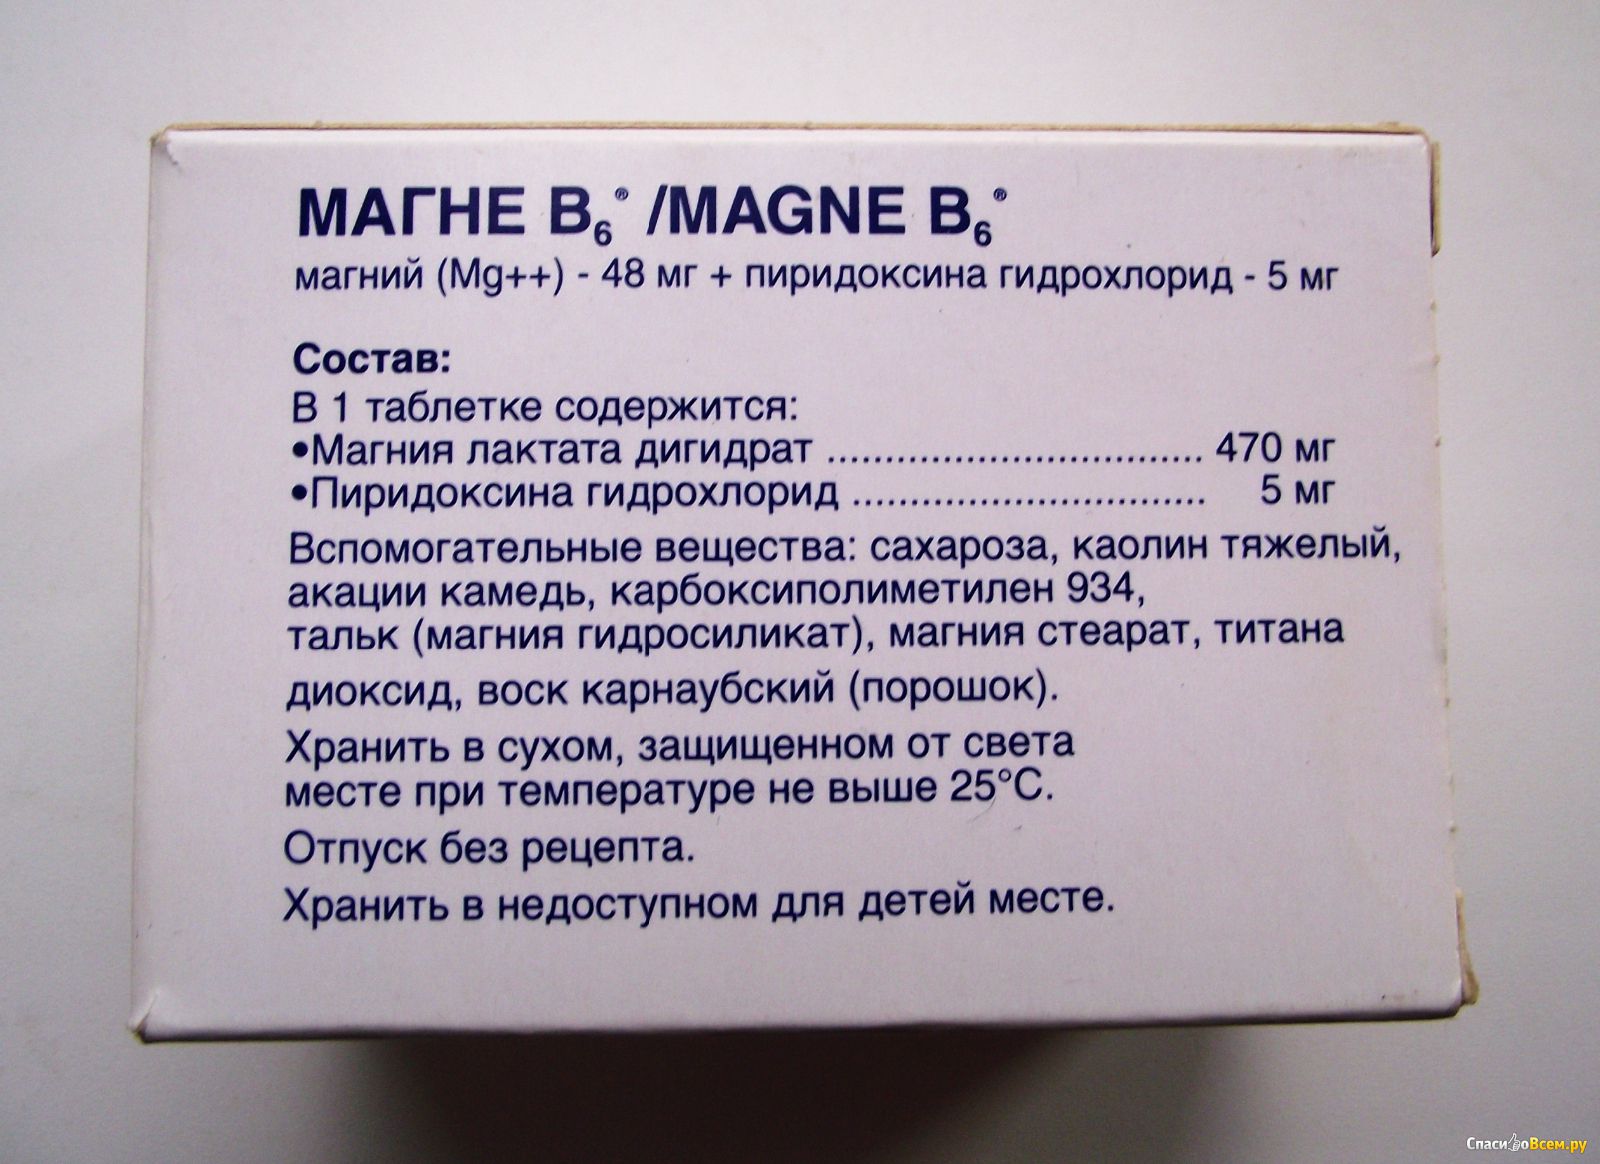 Магний б 6 его польза и вред. Магний в6 состав. Магний в6 суточная дозировка. Магний б6 + пиридоксина гидрохлорид.